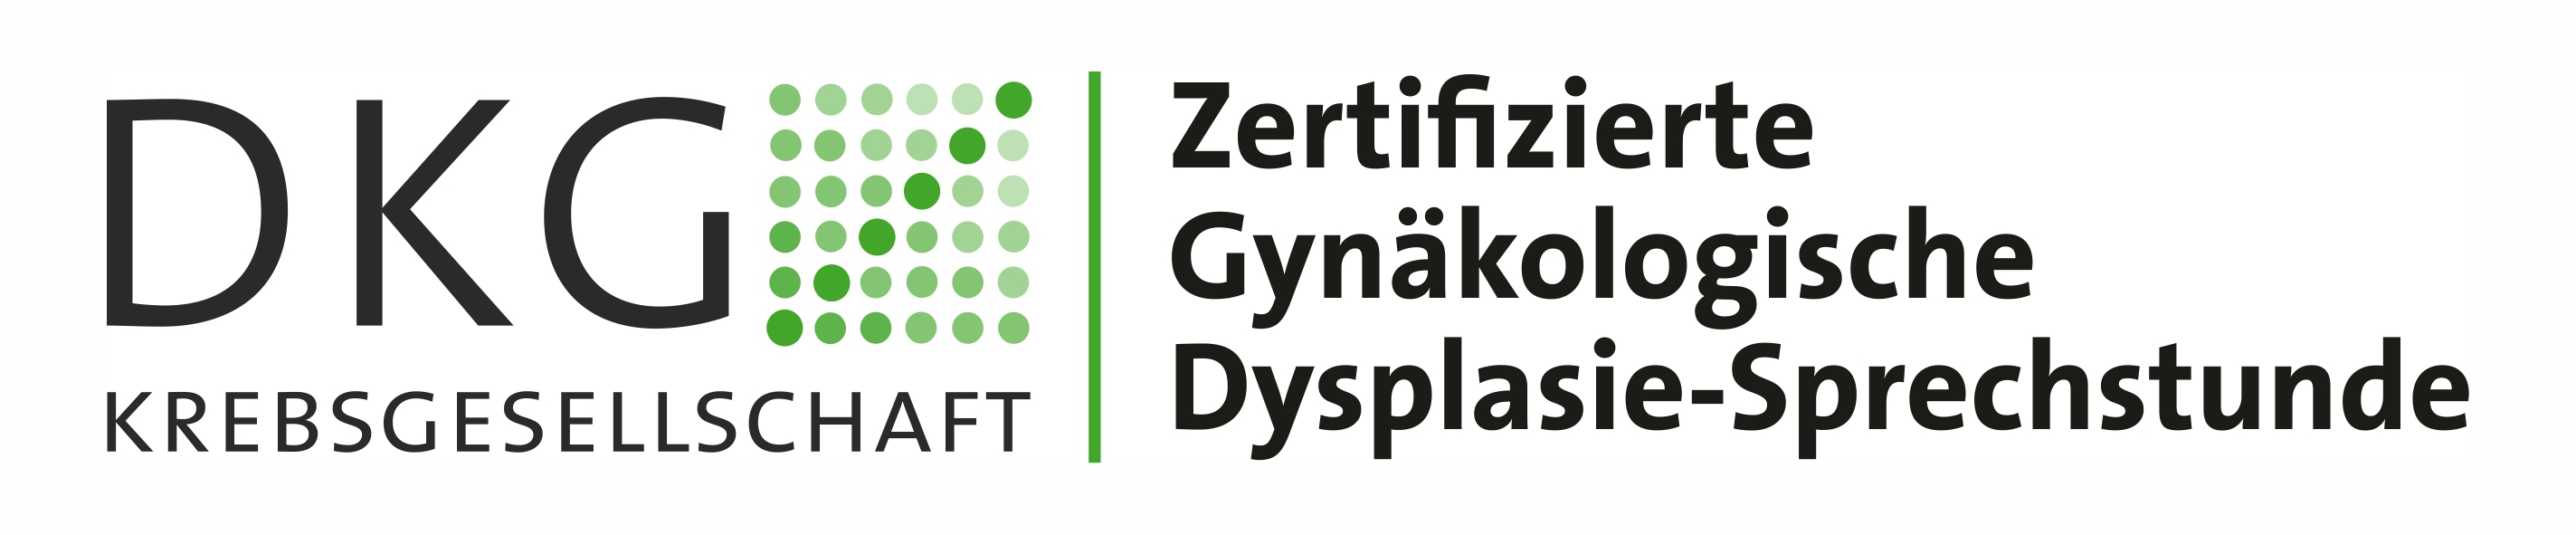 DKG zertifizierte Dysplasiesprechstunde